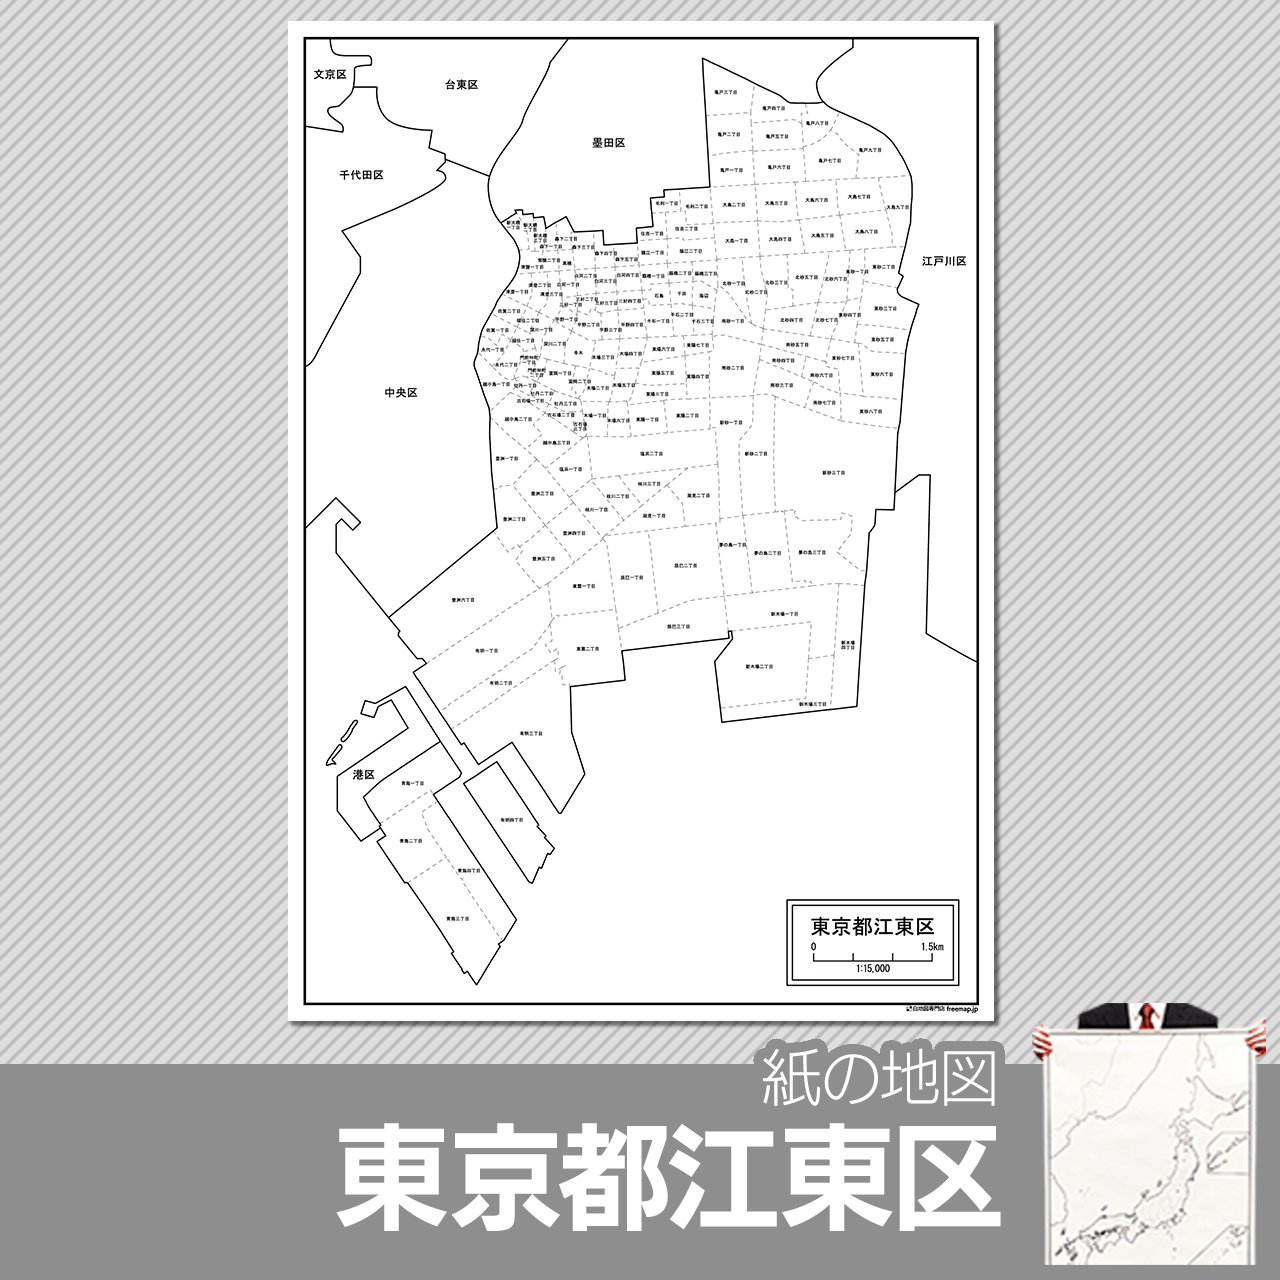 東京都江東区の紙の白地図のサムネイル